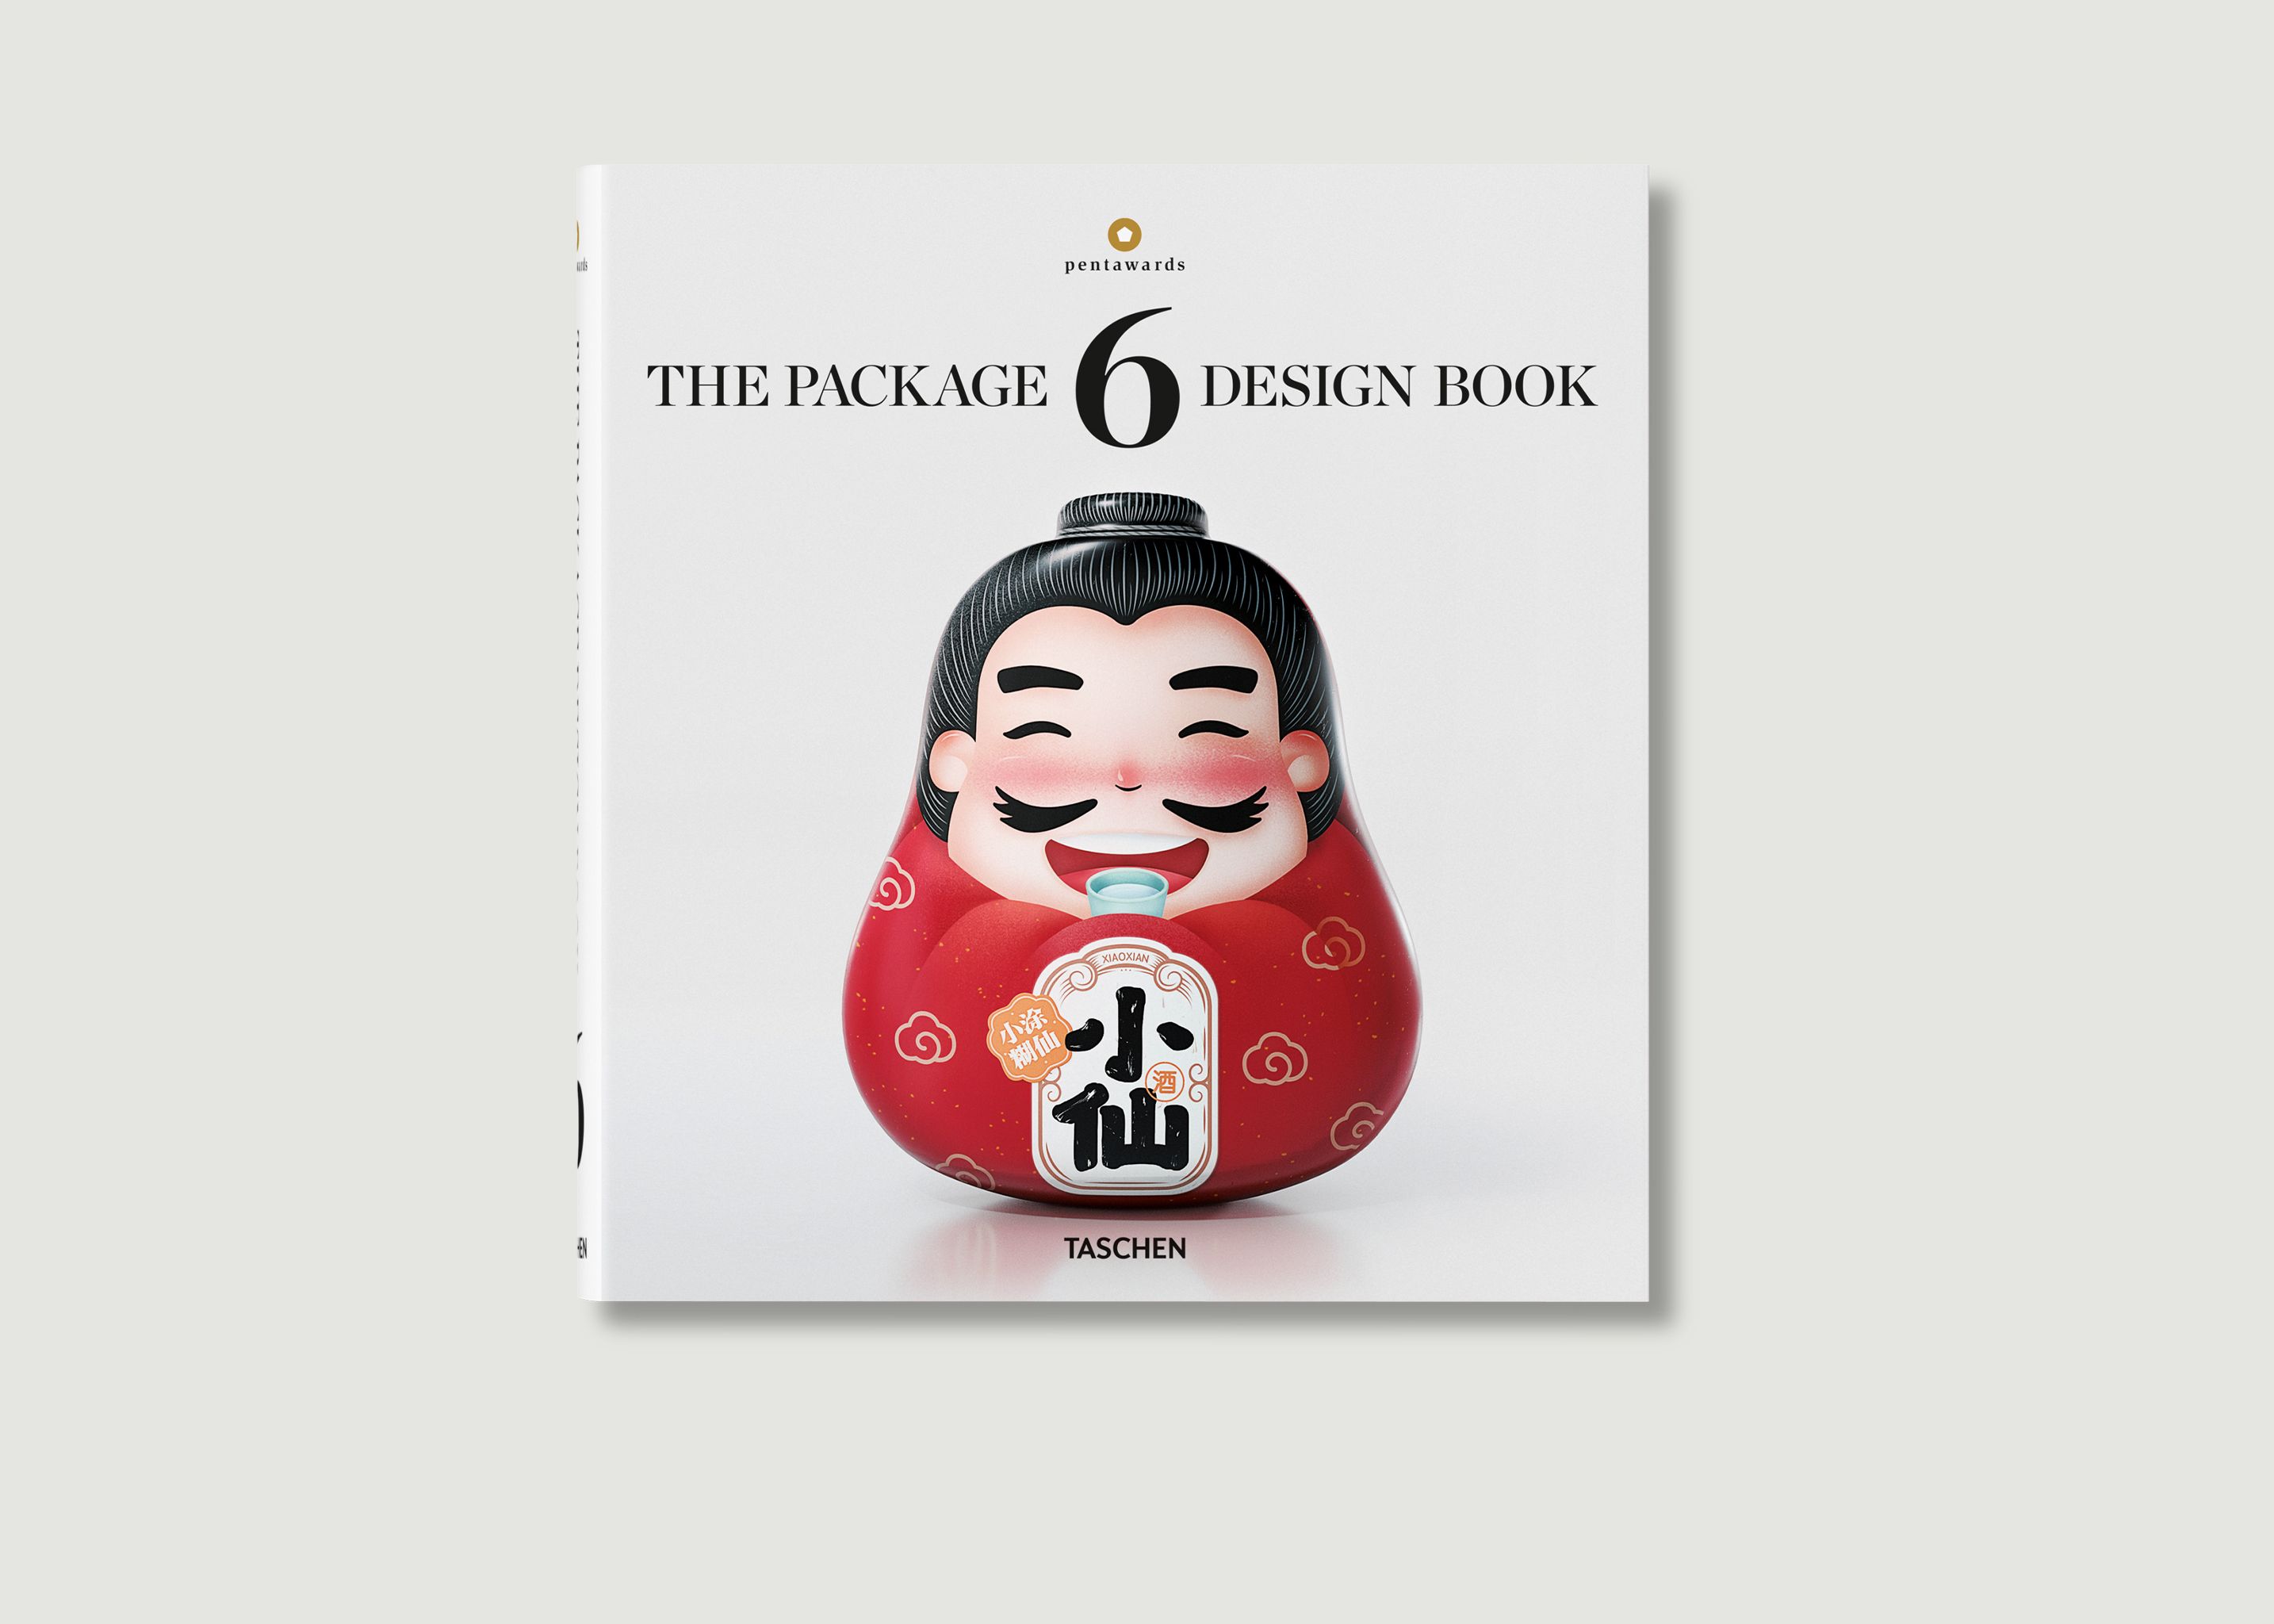 Book Package Design Book 6 - Taschen